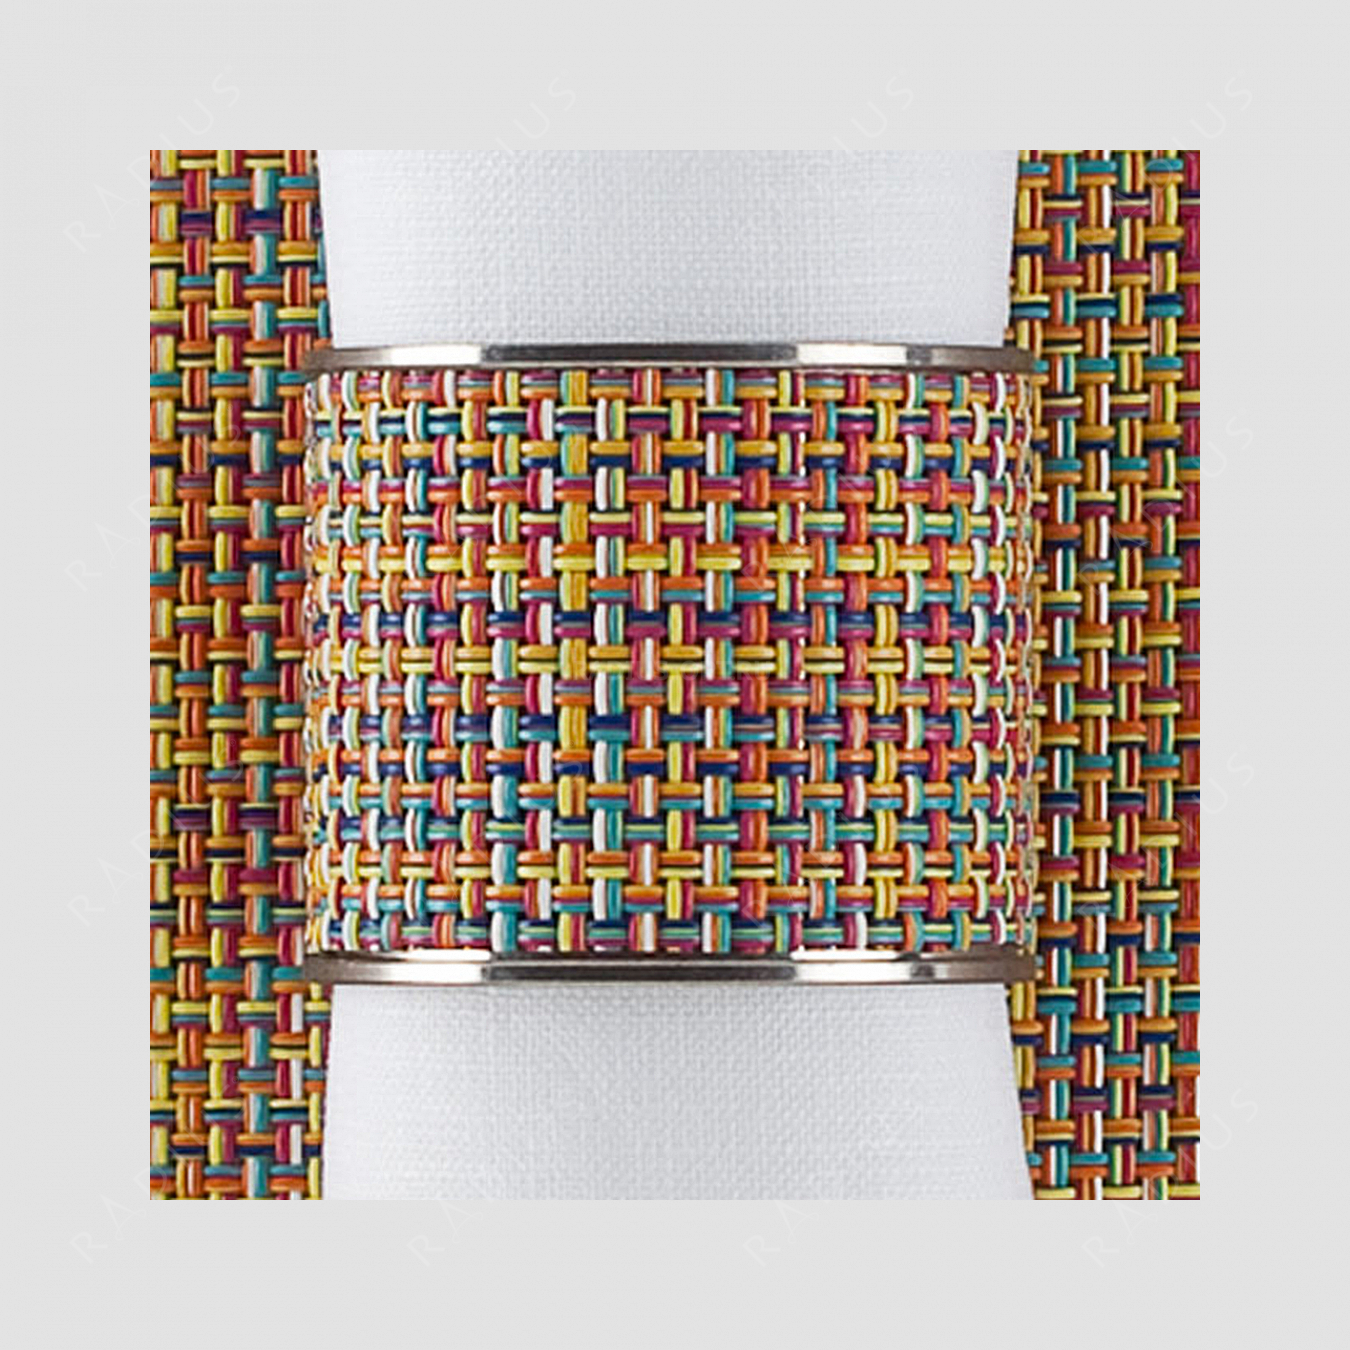 Кольцо для салфеток Confetti, серия Stainless steel, CHILEWICH, США